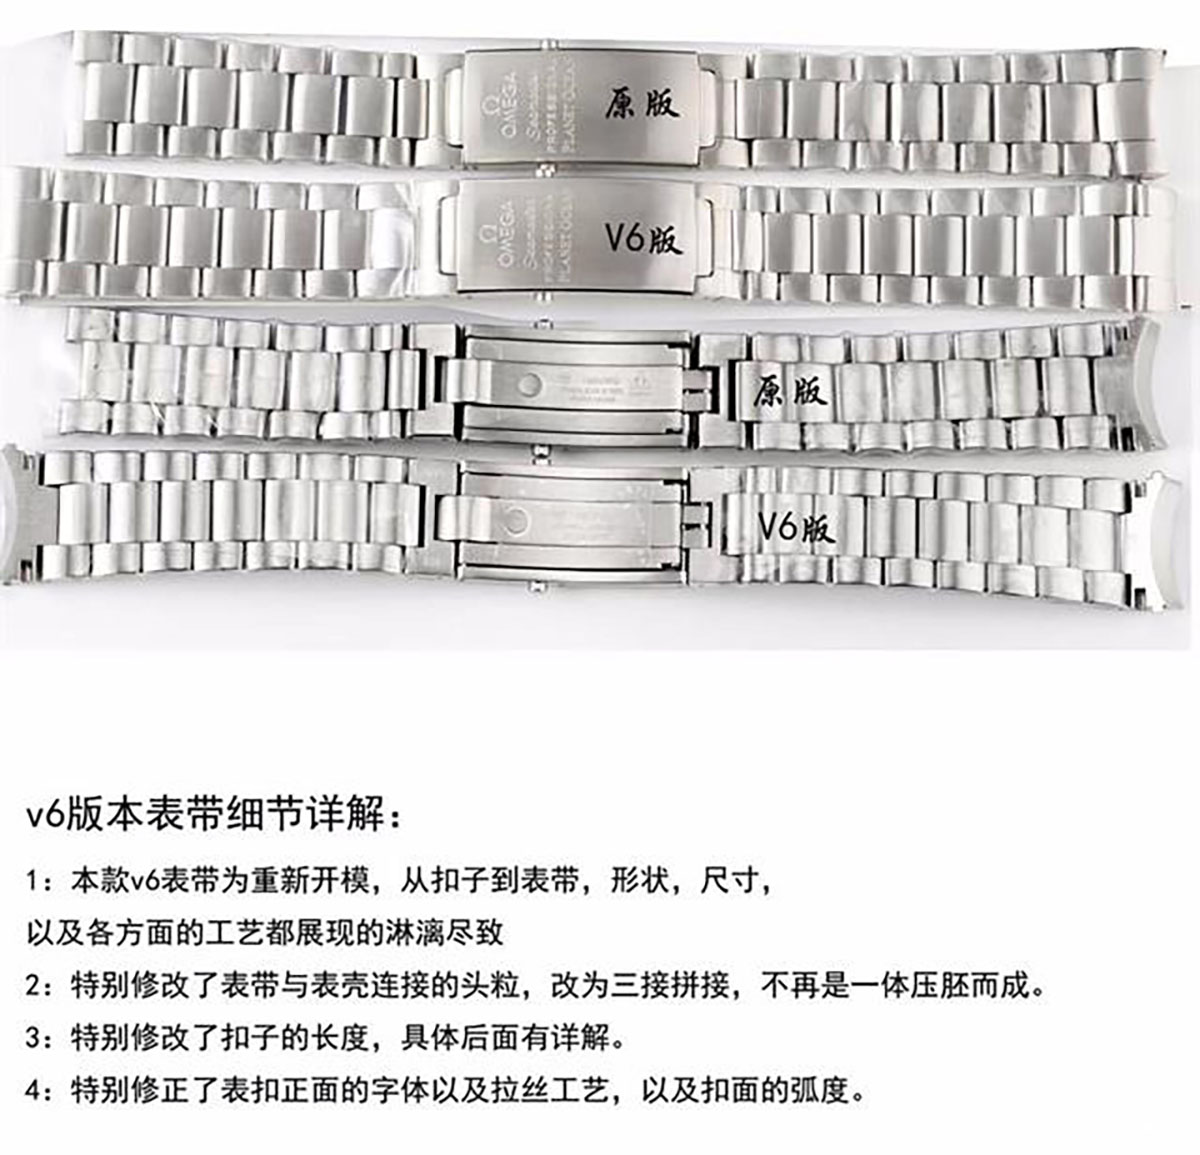 N厂欧米茄海马系列1948复刻腕表做工细节究竟如何-对比图文评测插图14